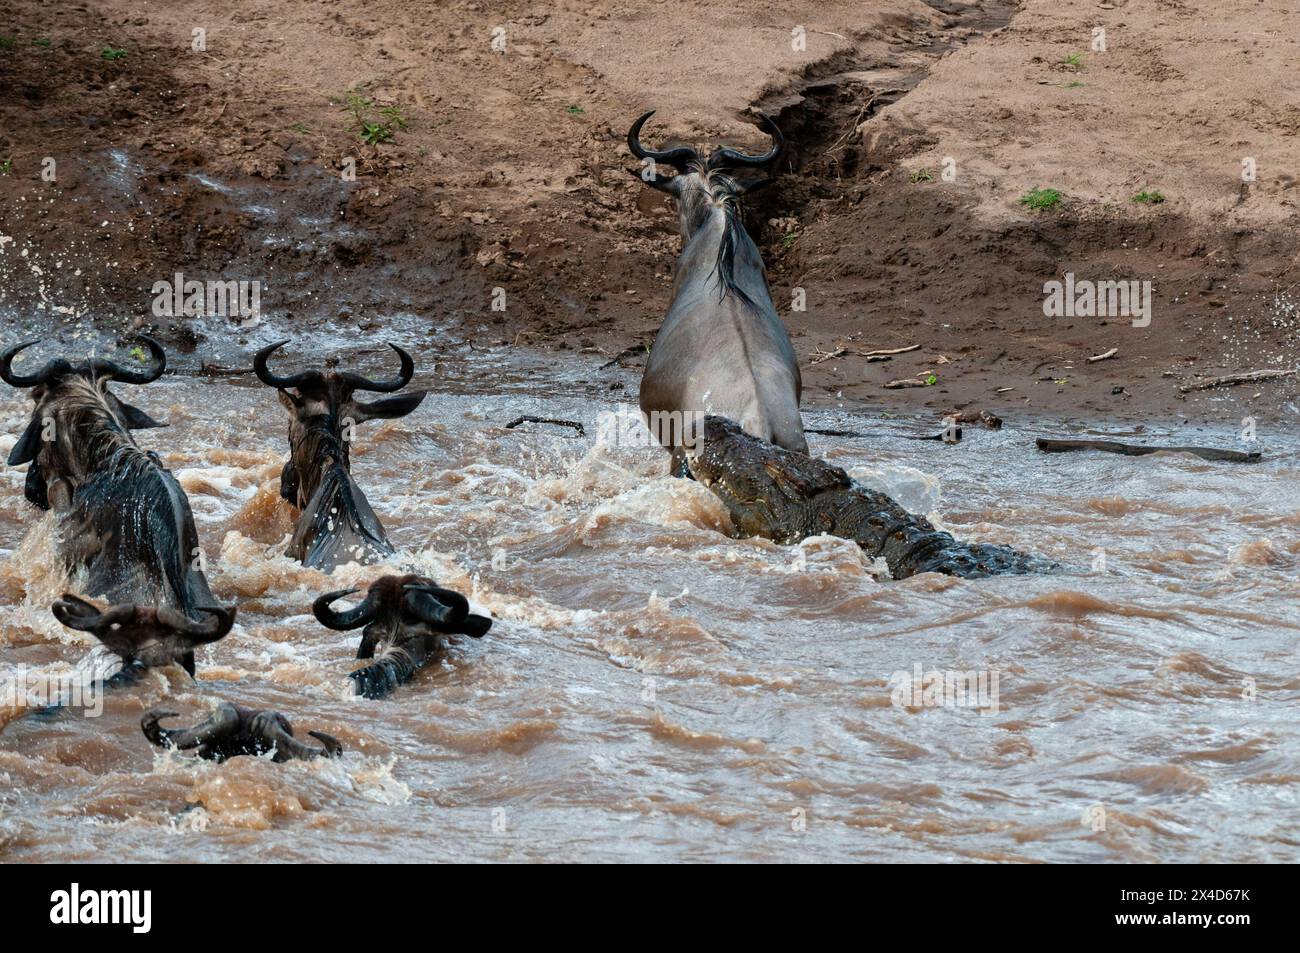 Ein Nil-Krokodil, Crocodylus niloticus, greift ein Gnus an, Connochaetes taurinus, und überquert einen Fluss. Masai Mara National Reserve, Kenia. Stockfoto